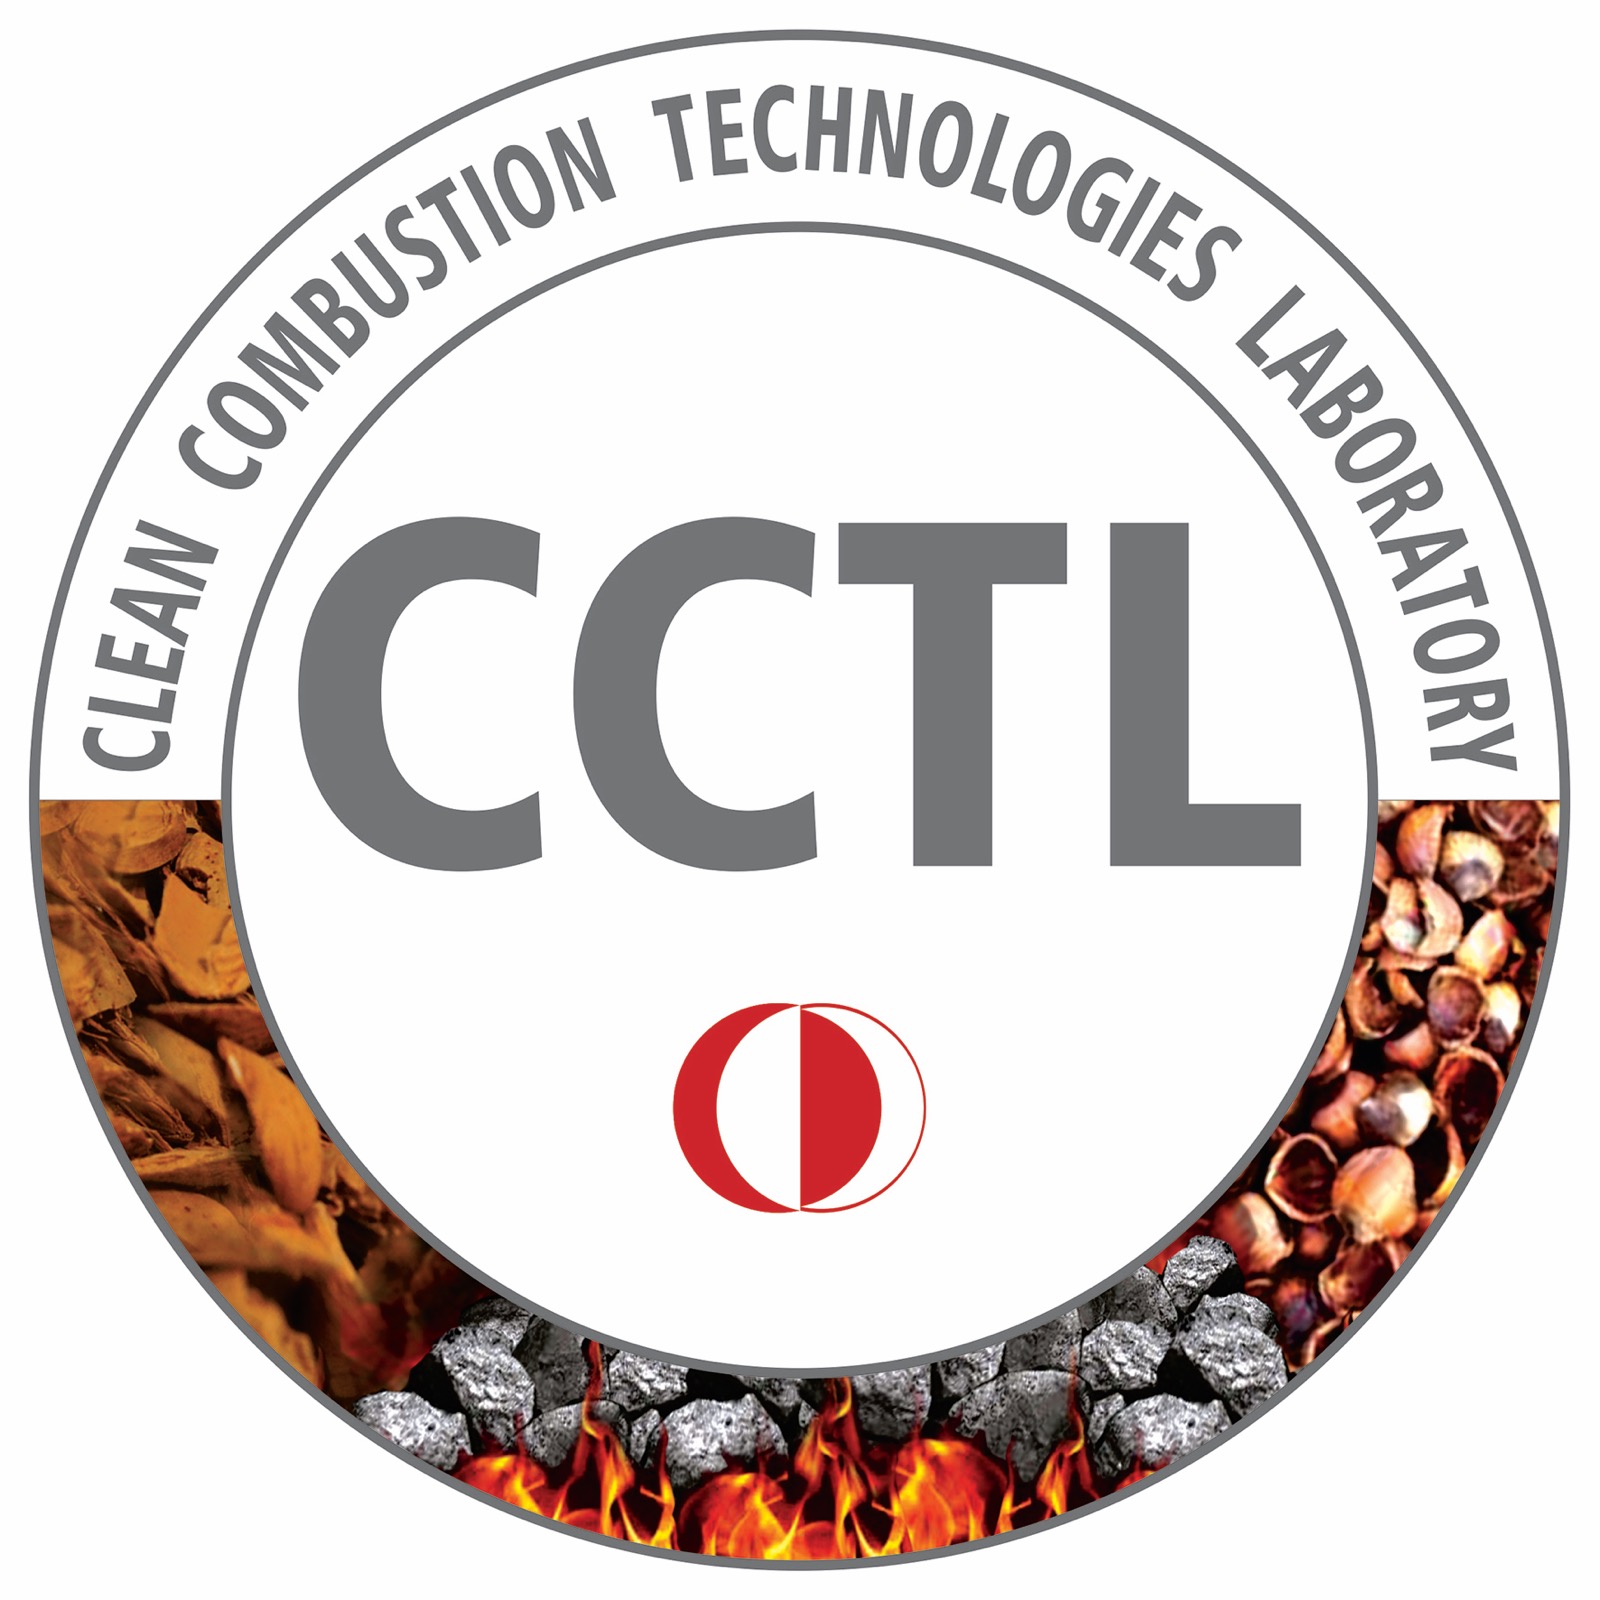 CCTL-Logo